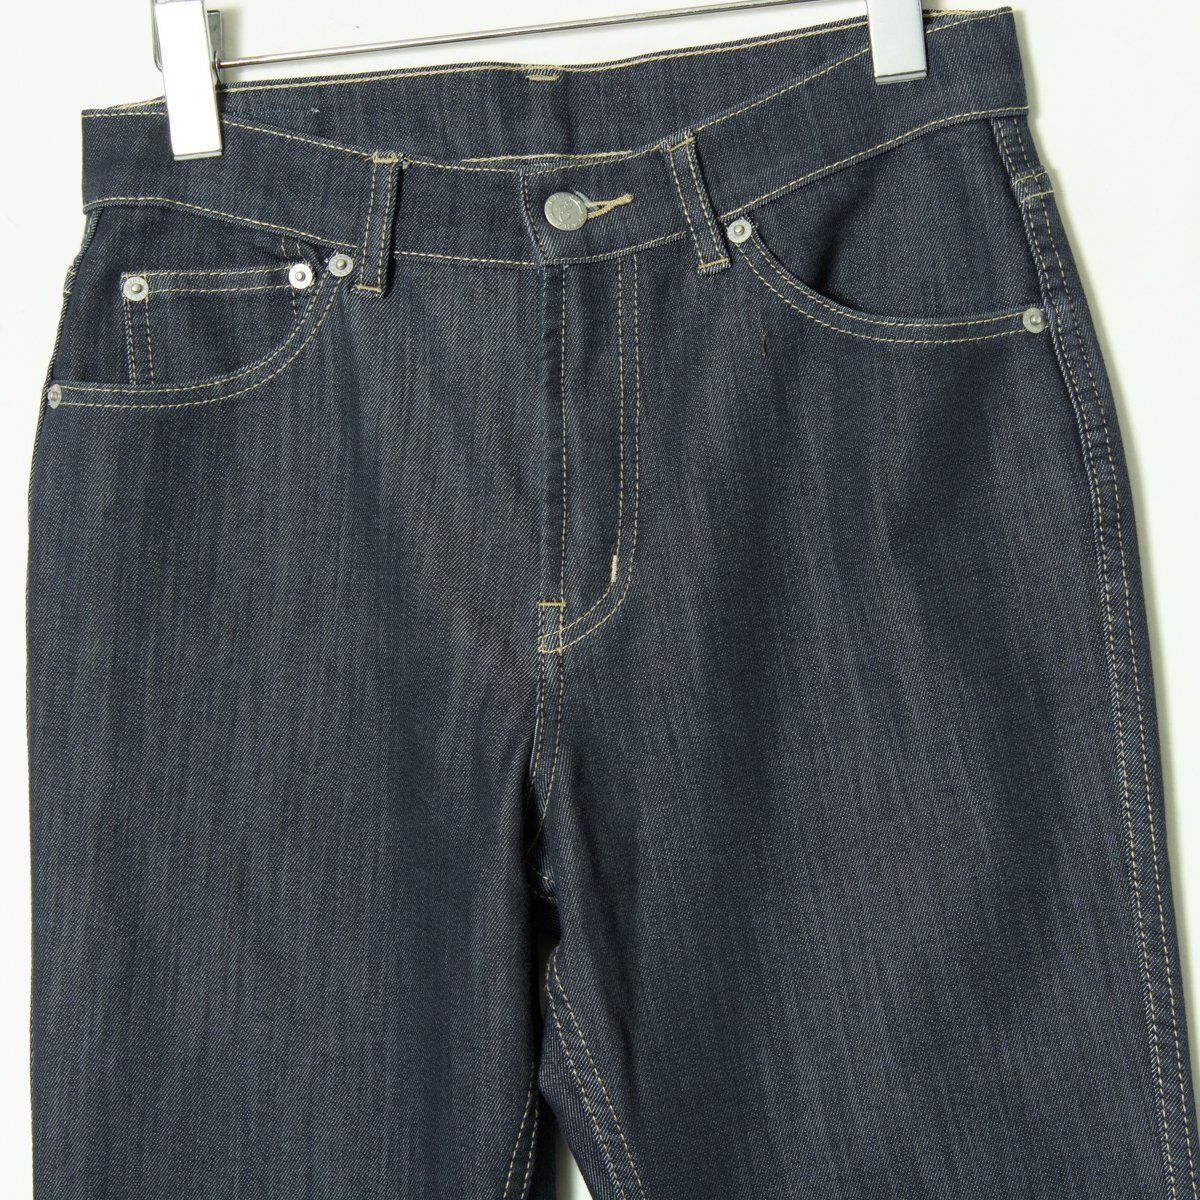 B-Three Jeans ビースリー ストレッチデニムパンツ ジーンズ ストレート 美脚パンツ ボトムス カジュアル 青 インディゴ 36 13号_画像4